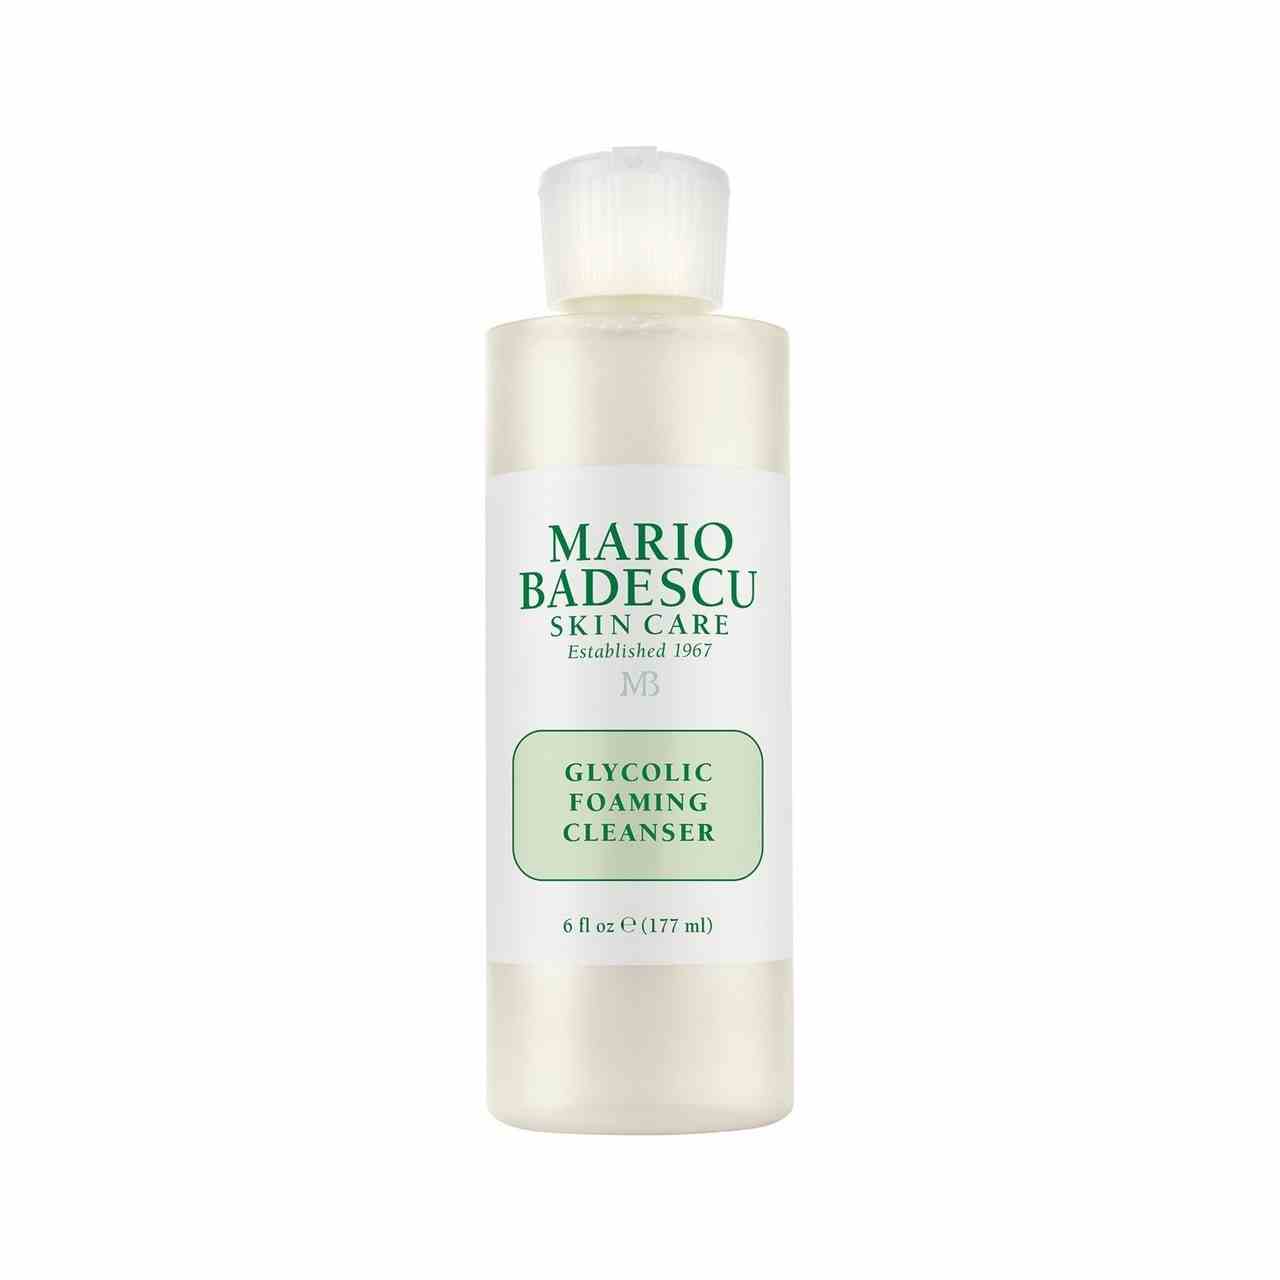 Mario Badescu Glycolic Foaming Cleanser Durchsichtige Tube mit Reinigungsmittel mit weißem und grünem Etikett auf weißem Hintergrund